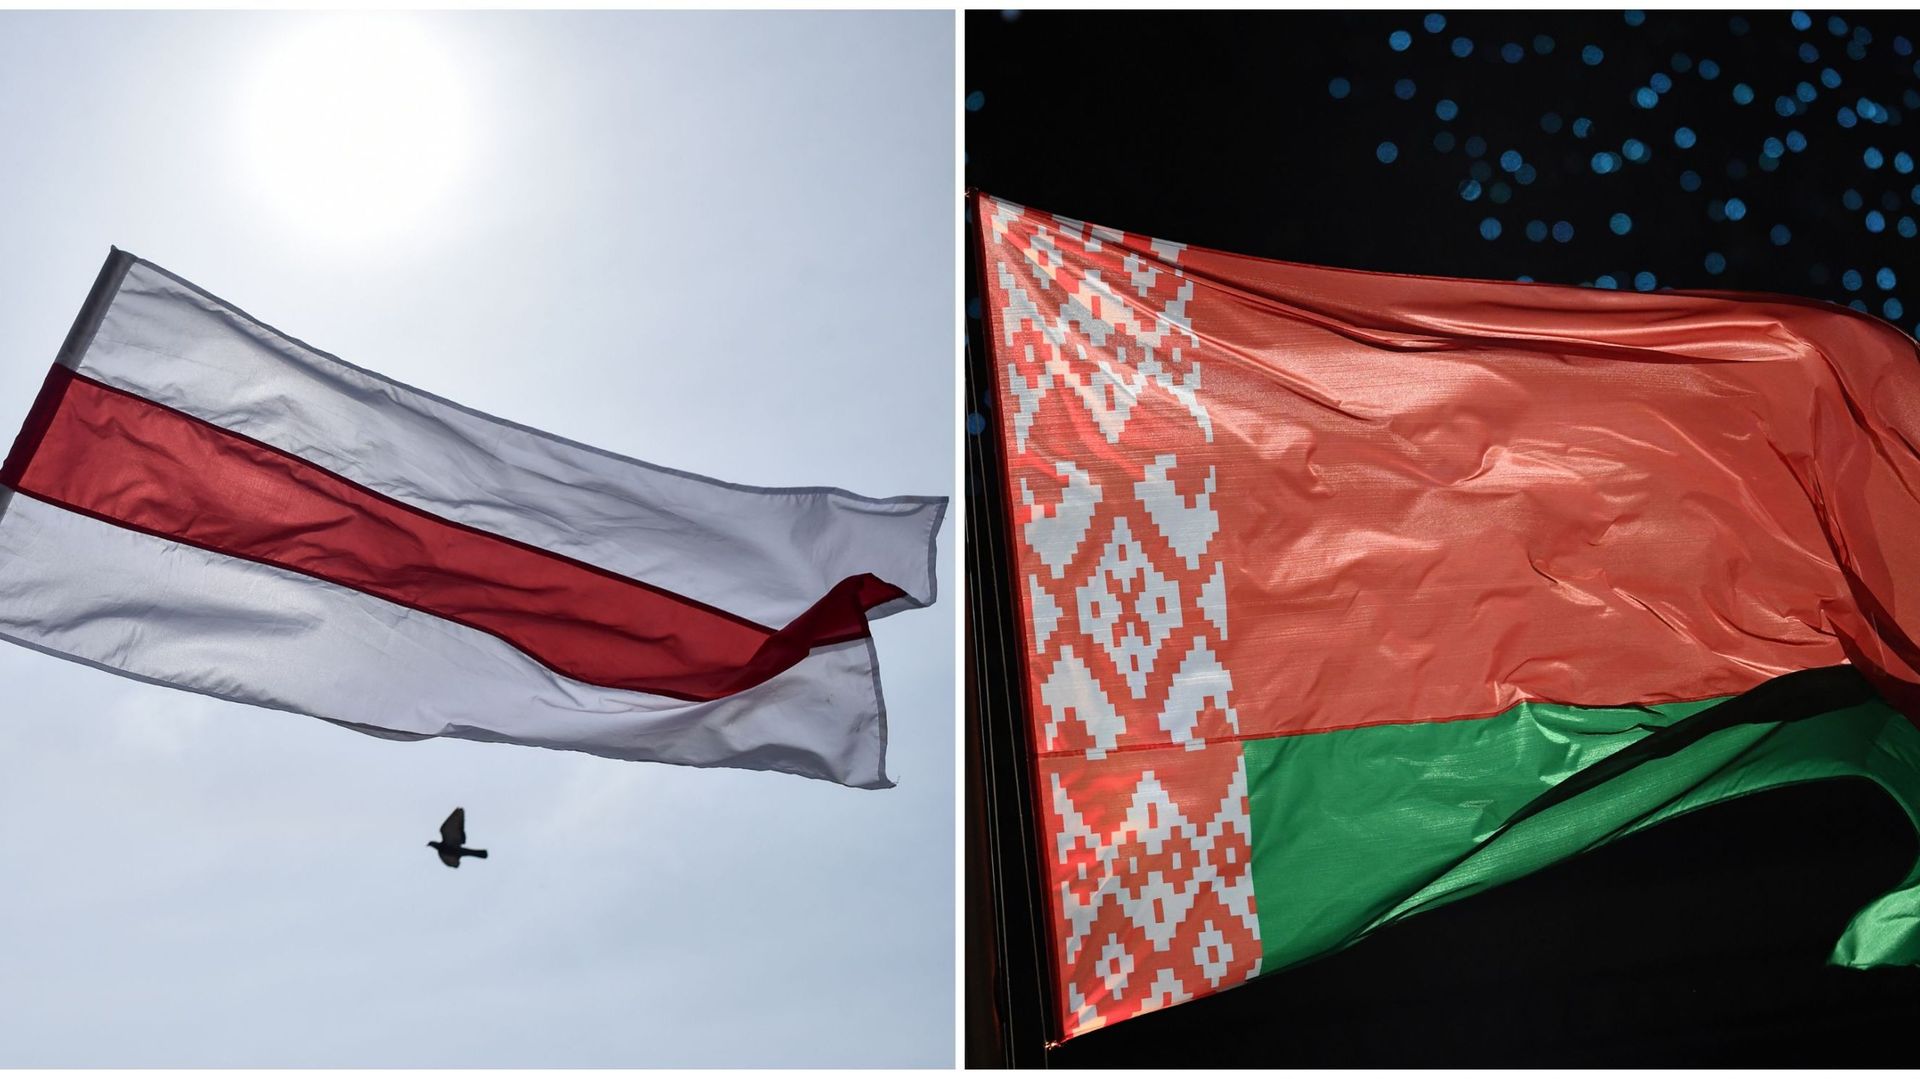 Même les drapeaux coexistent. À gauche le drapeau adopté à l’indépendance de l’Union soviétique en 1991, à droite celui utilisé depuis 1995 plus semblable à celui adopté sous l’URSS en 1951.